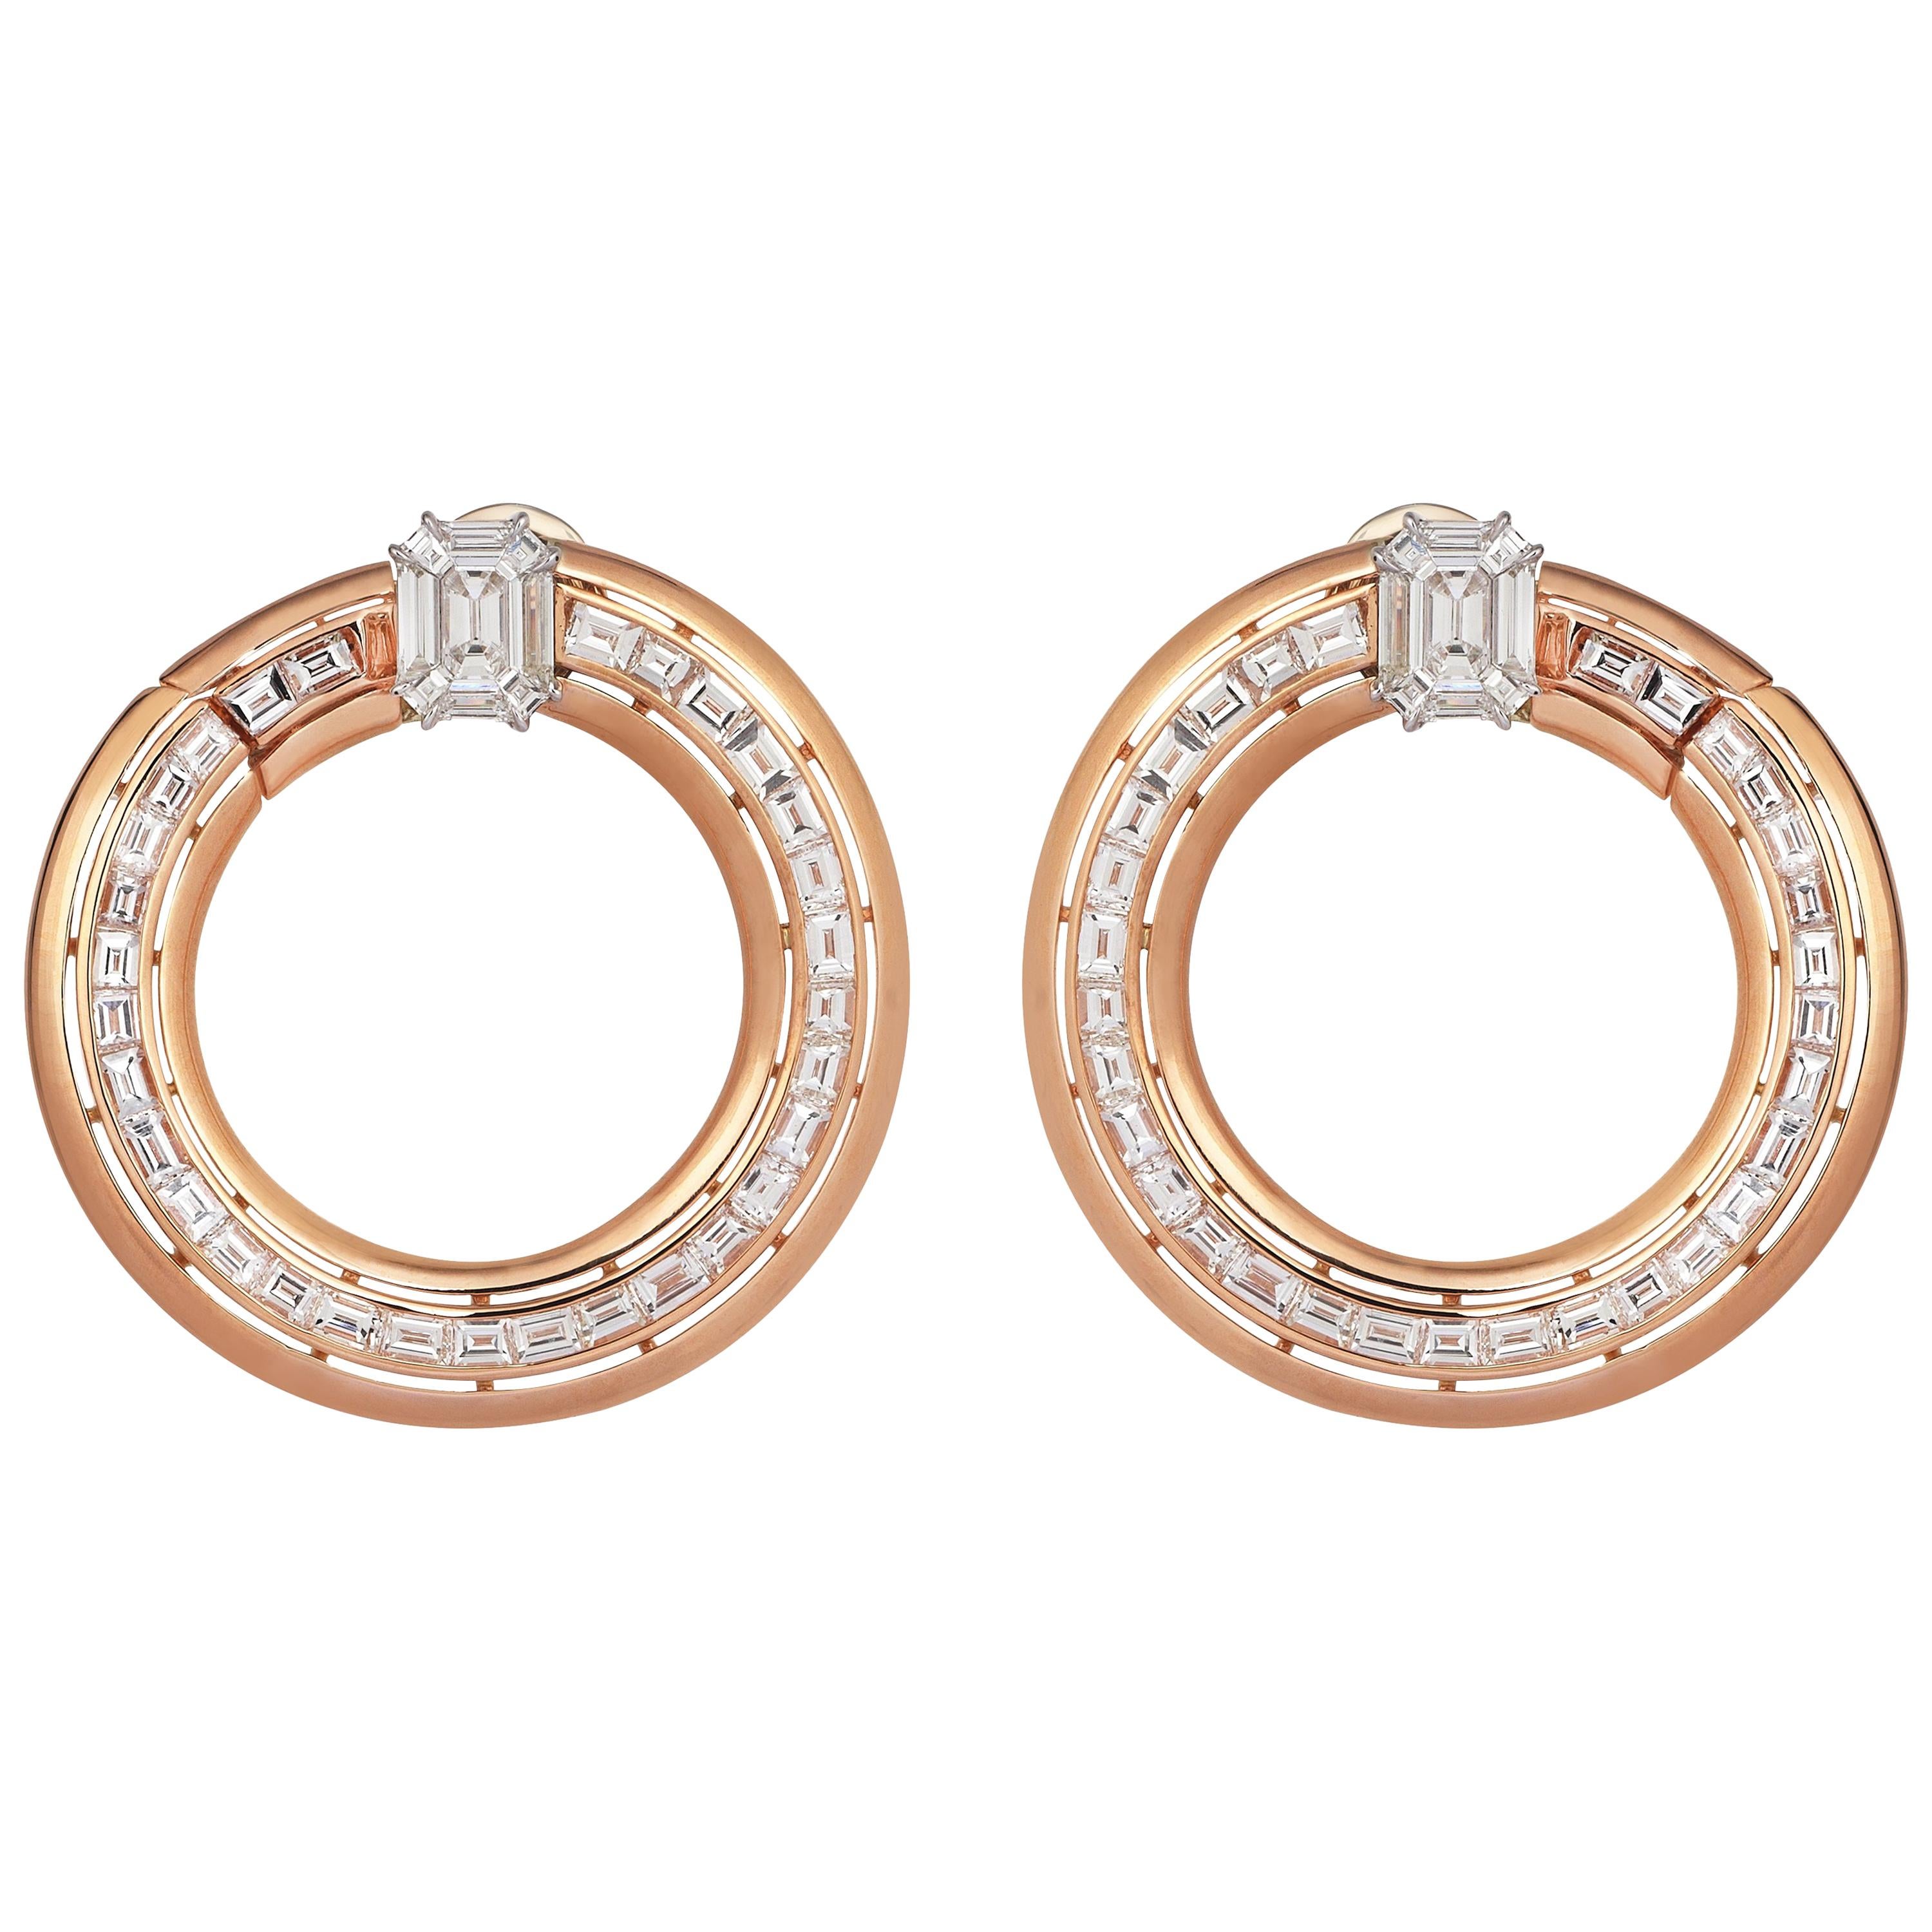 18 Karat Rose Gold 5.92 Pie Cut Diamond 1.37 Carat Emerald Cut Diamond Earrings For Sale